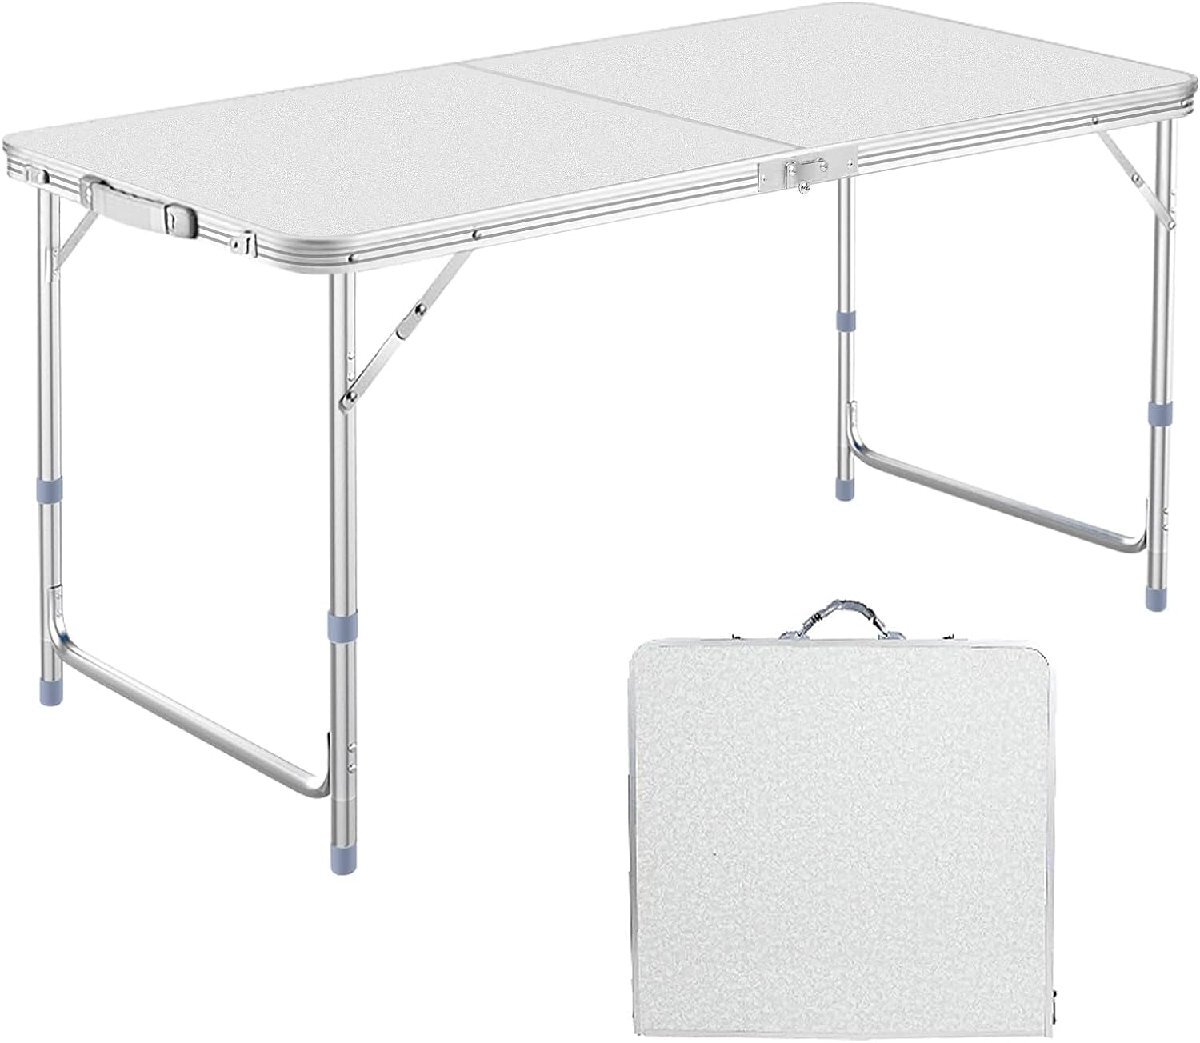 アウトドア テーブル キャンプ テーブル 折りたたみ 高さ3段階調整可能 120×60×(55-62-70)cm ピクニック レジャー キャンプ用_画像1